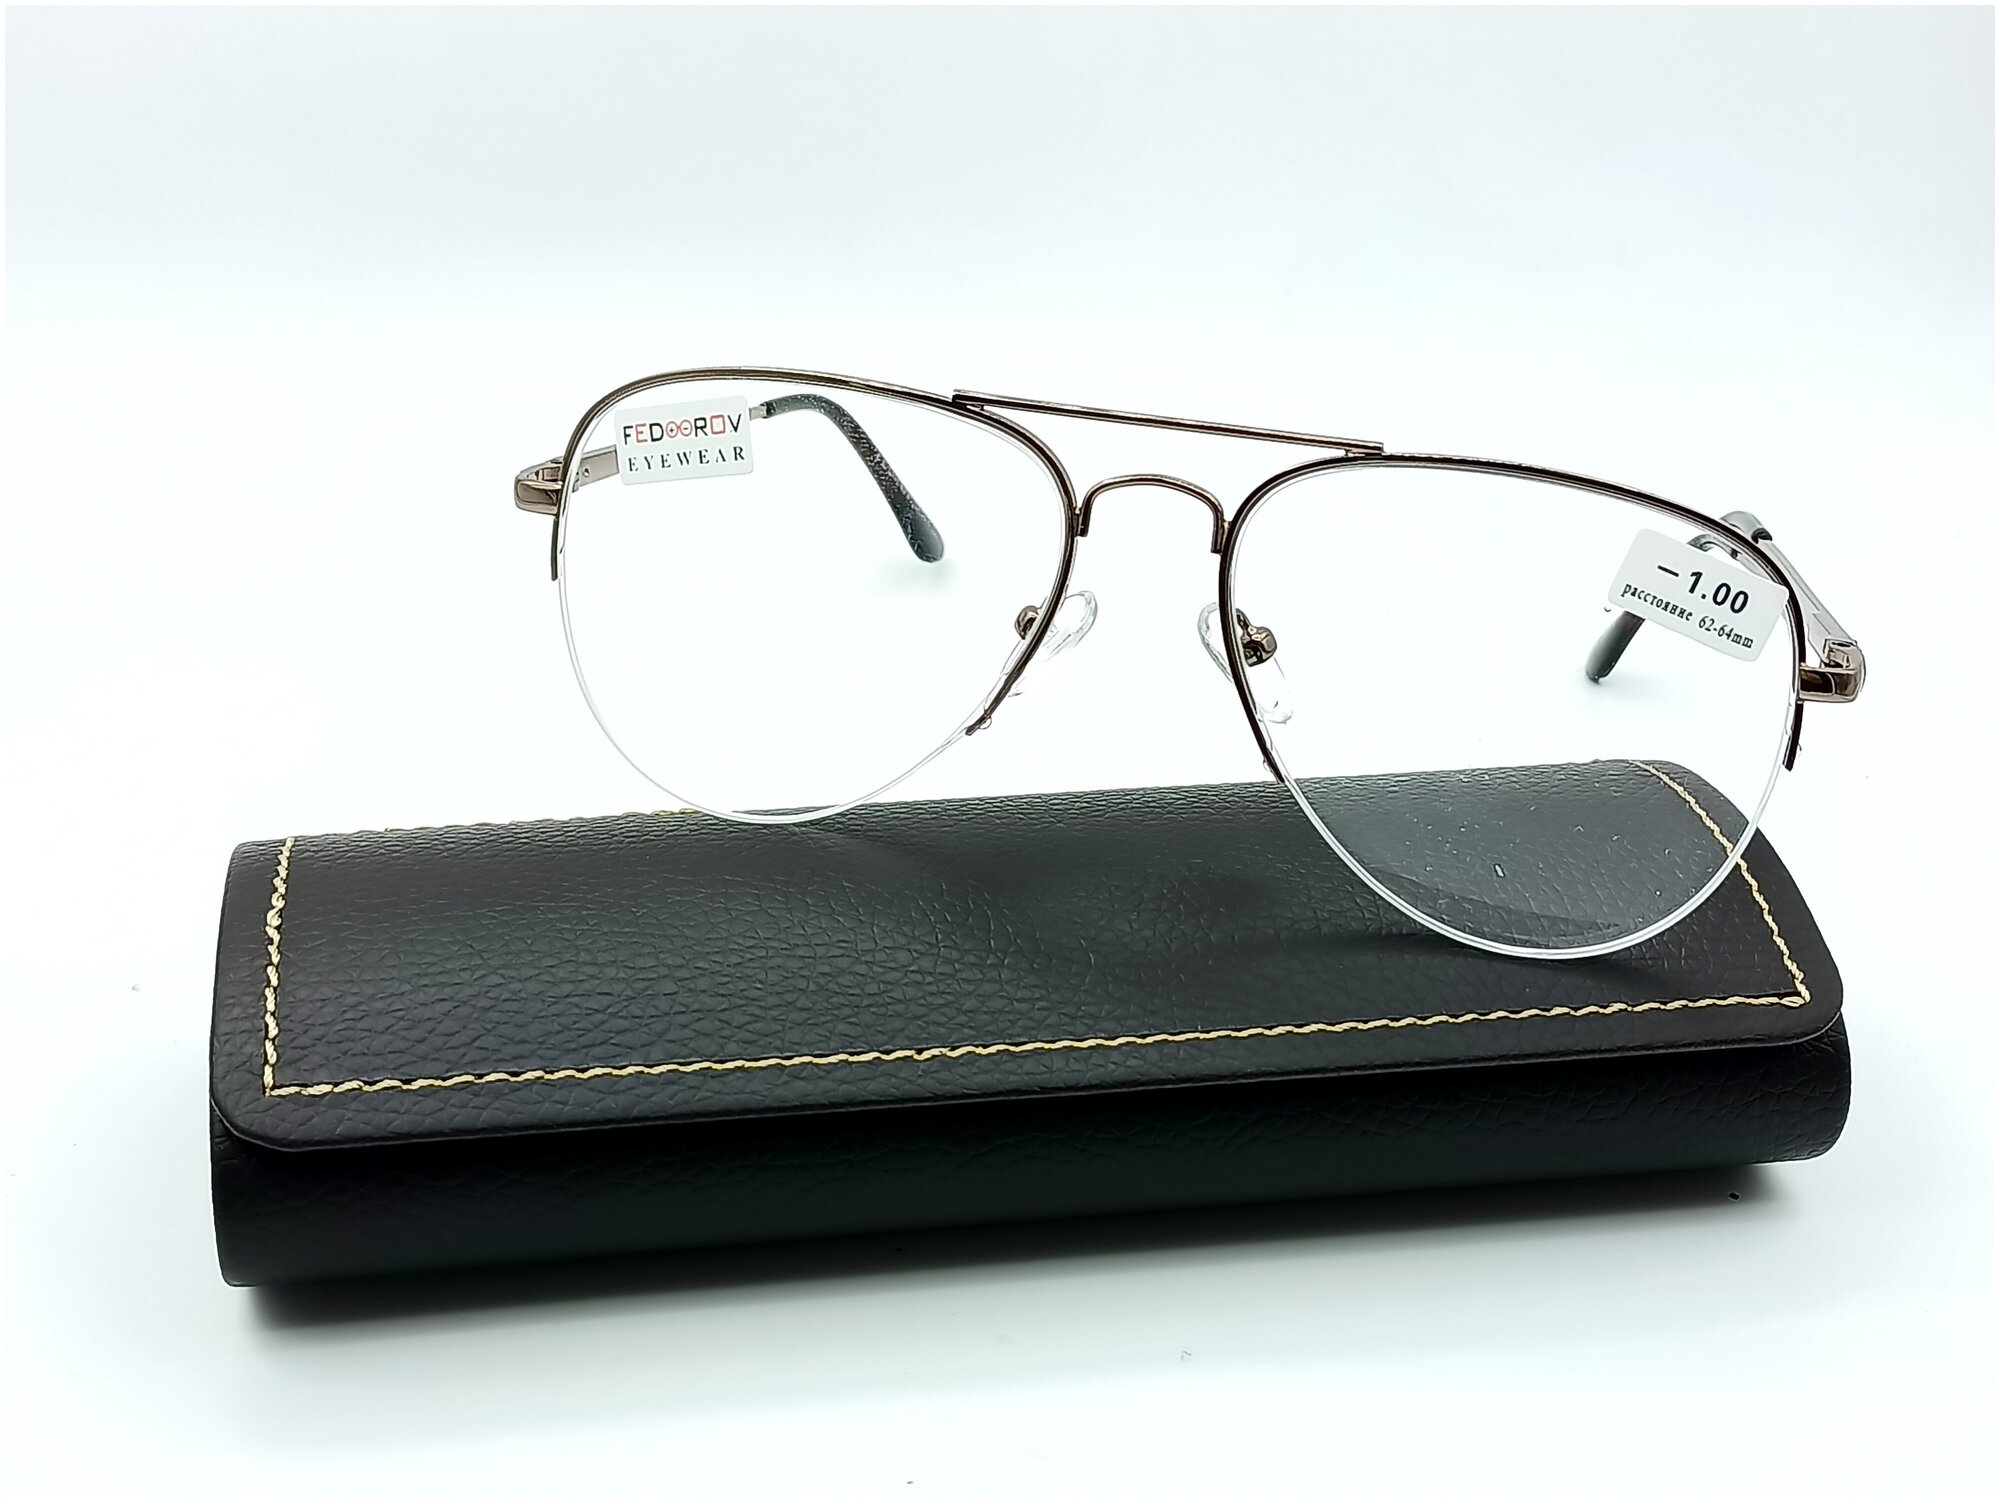 Готовые очки в стильной оправе FEDROV Авиаторы бронза +3.00 с футляром и салфеткой